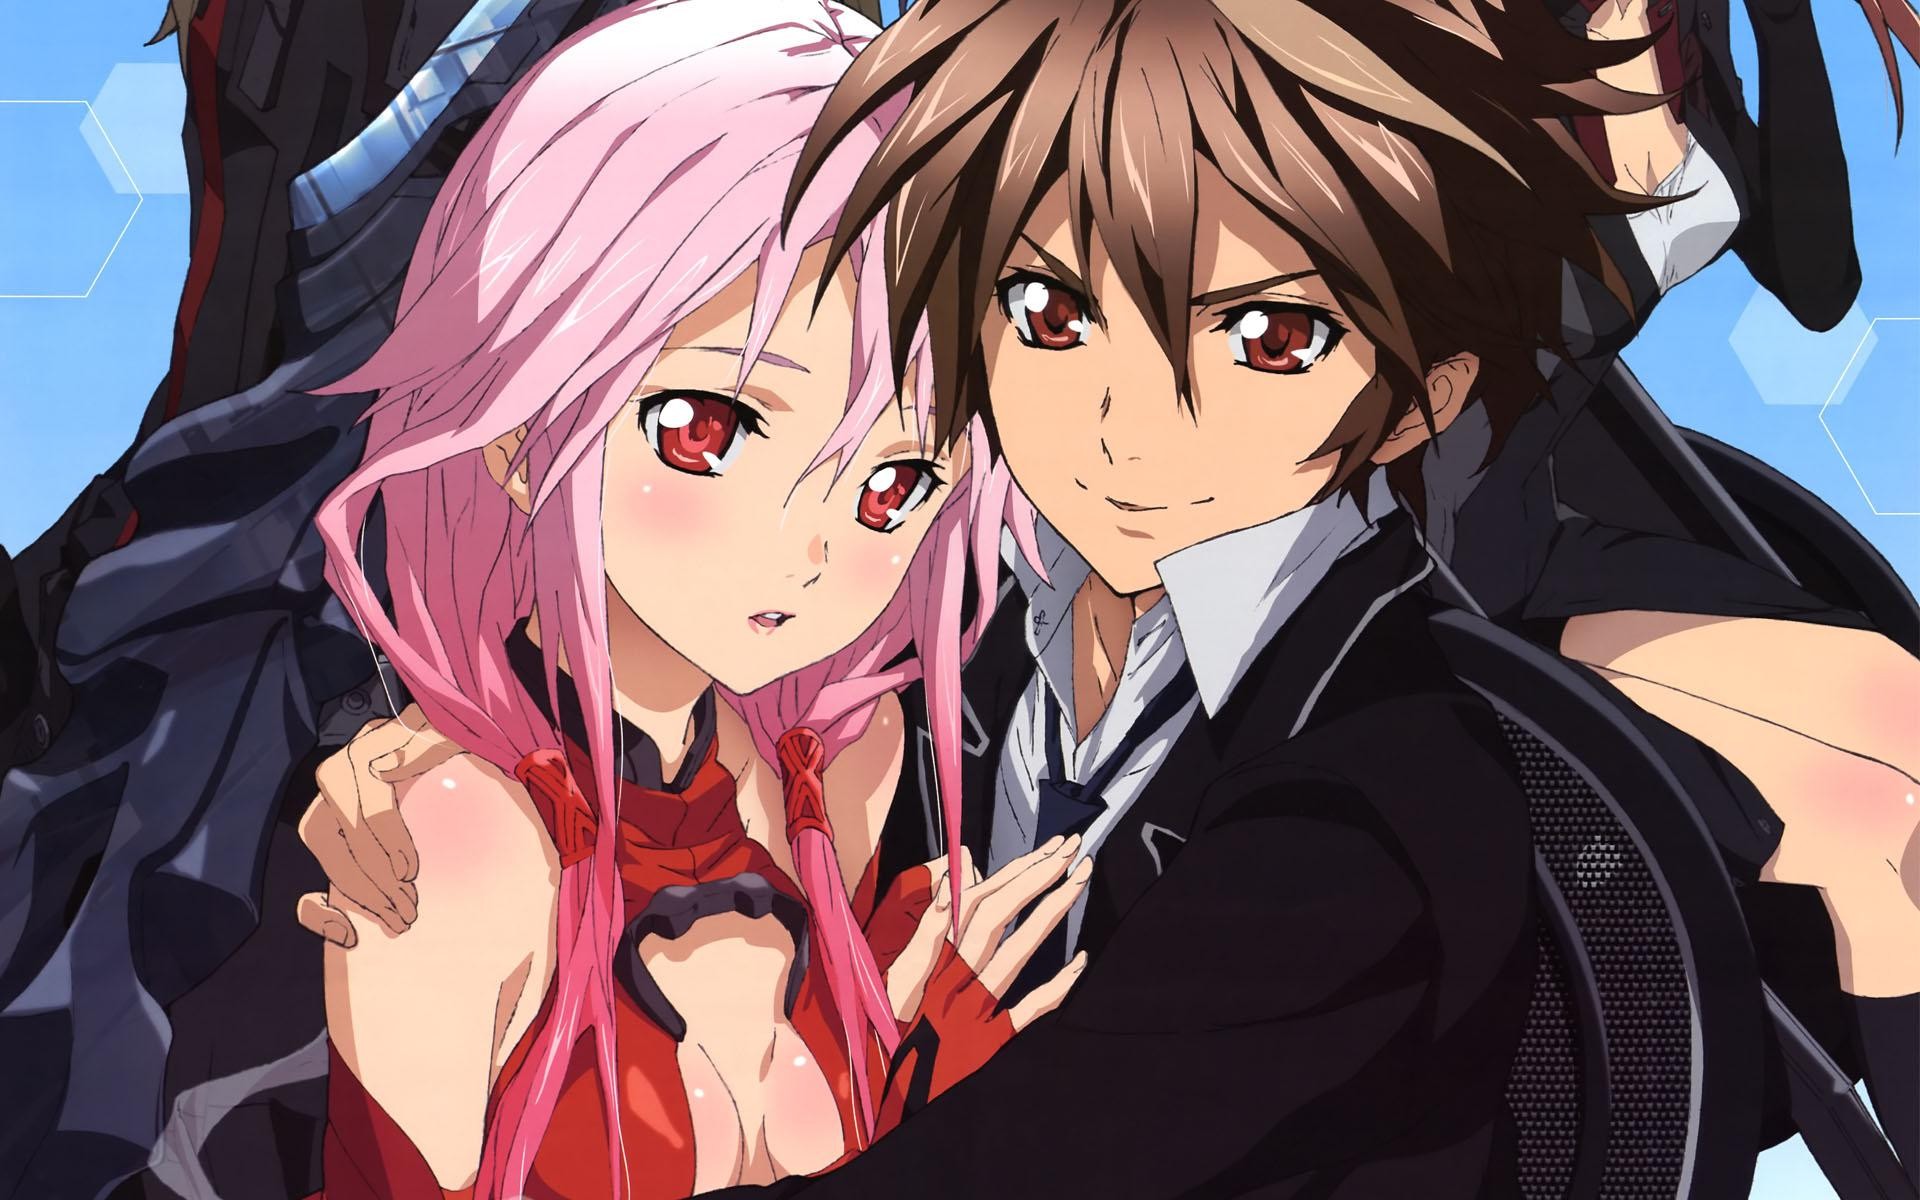 Anime Girls Anime Babes Pink Hair Red Eyes Brunette Anime Wallpaper